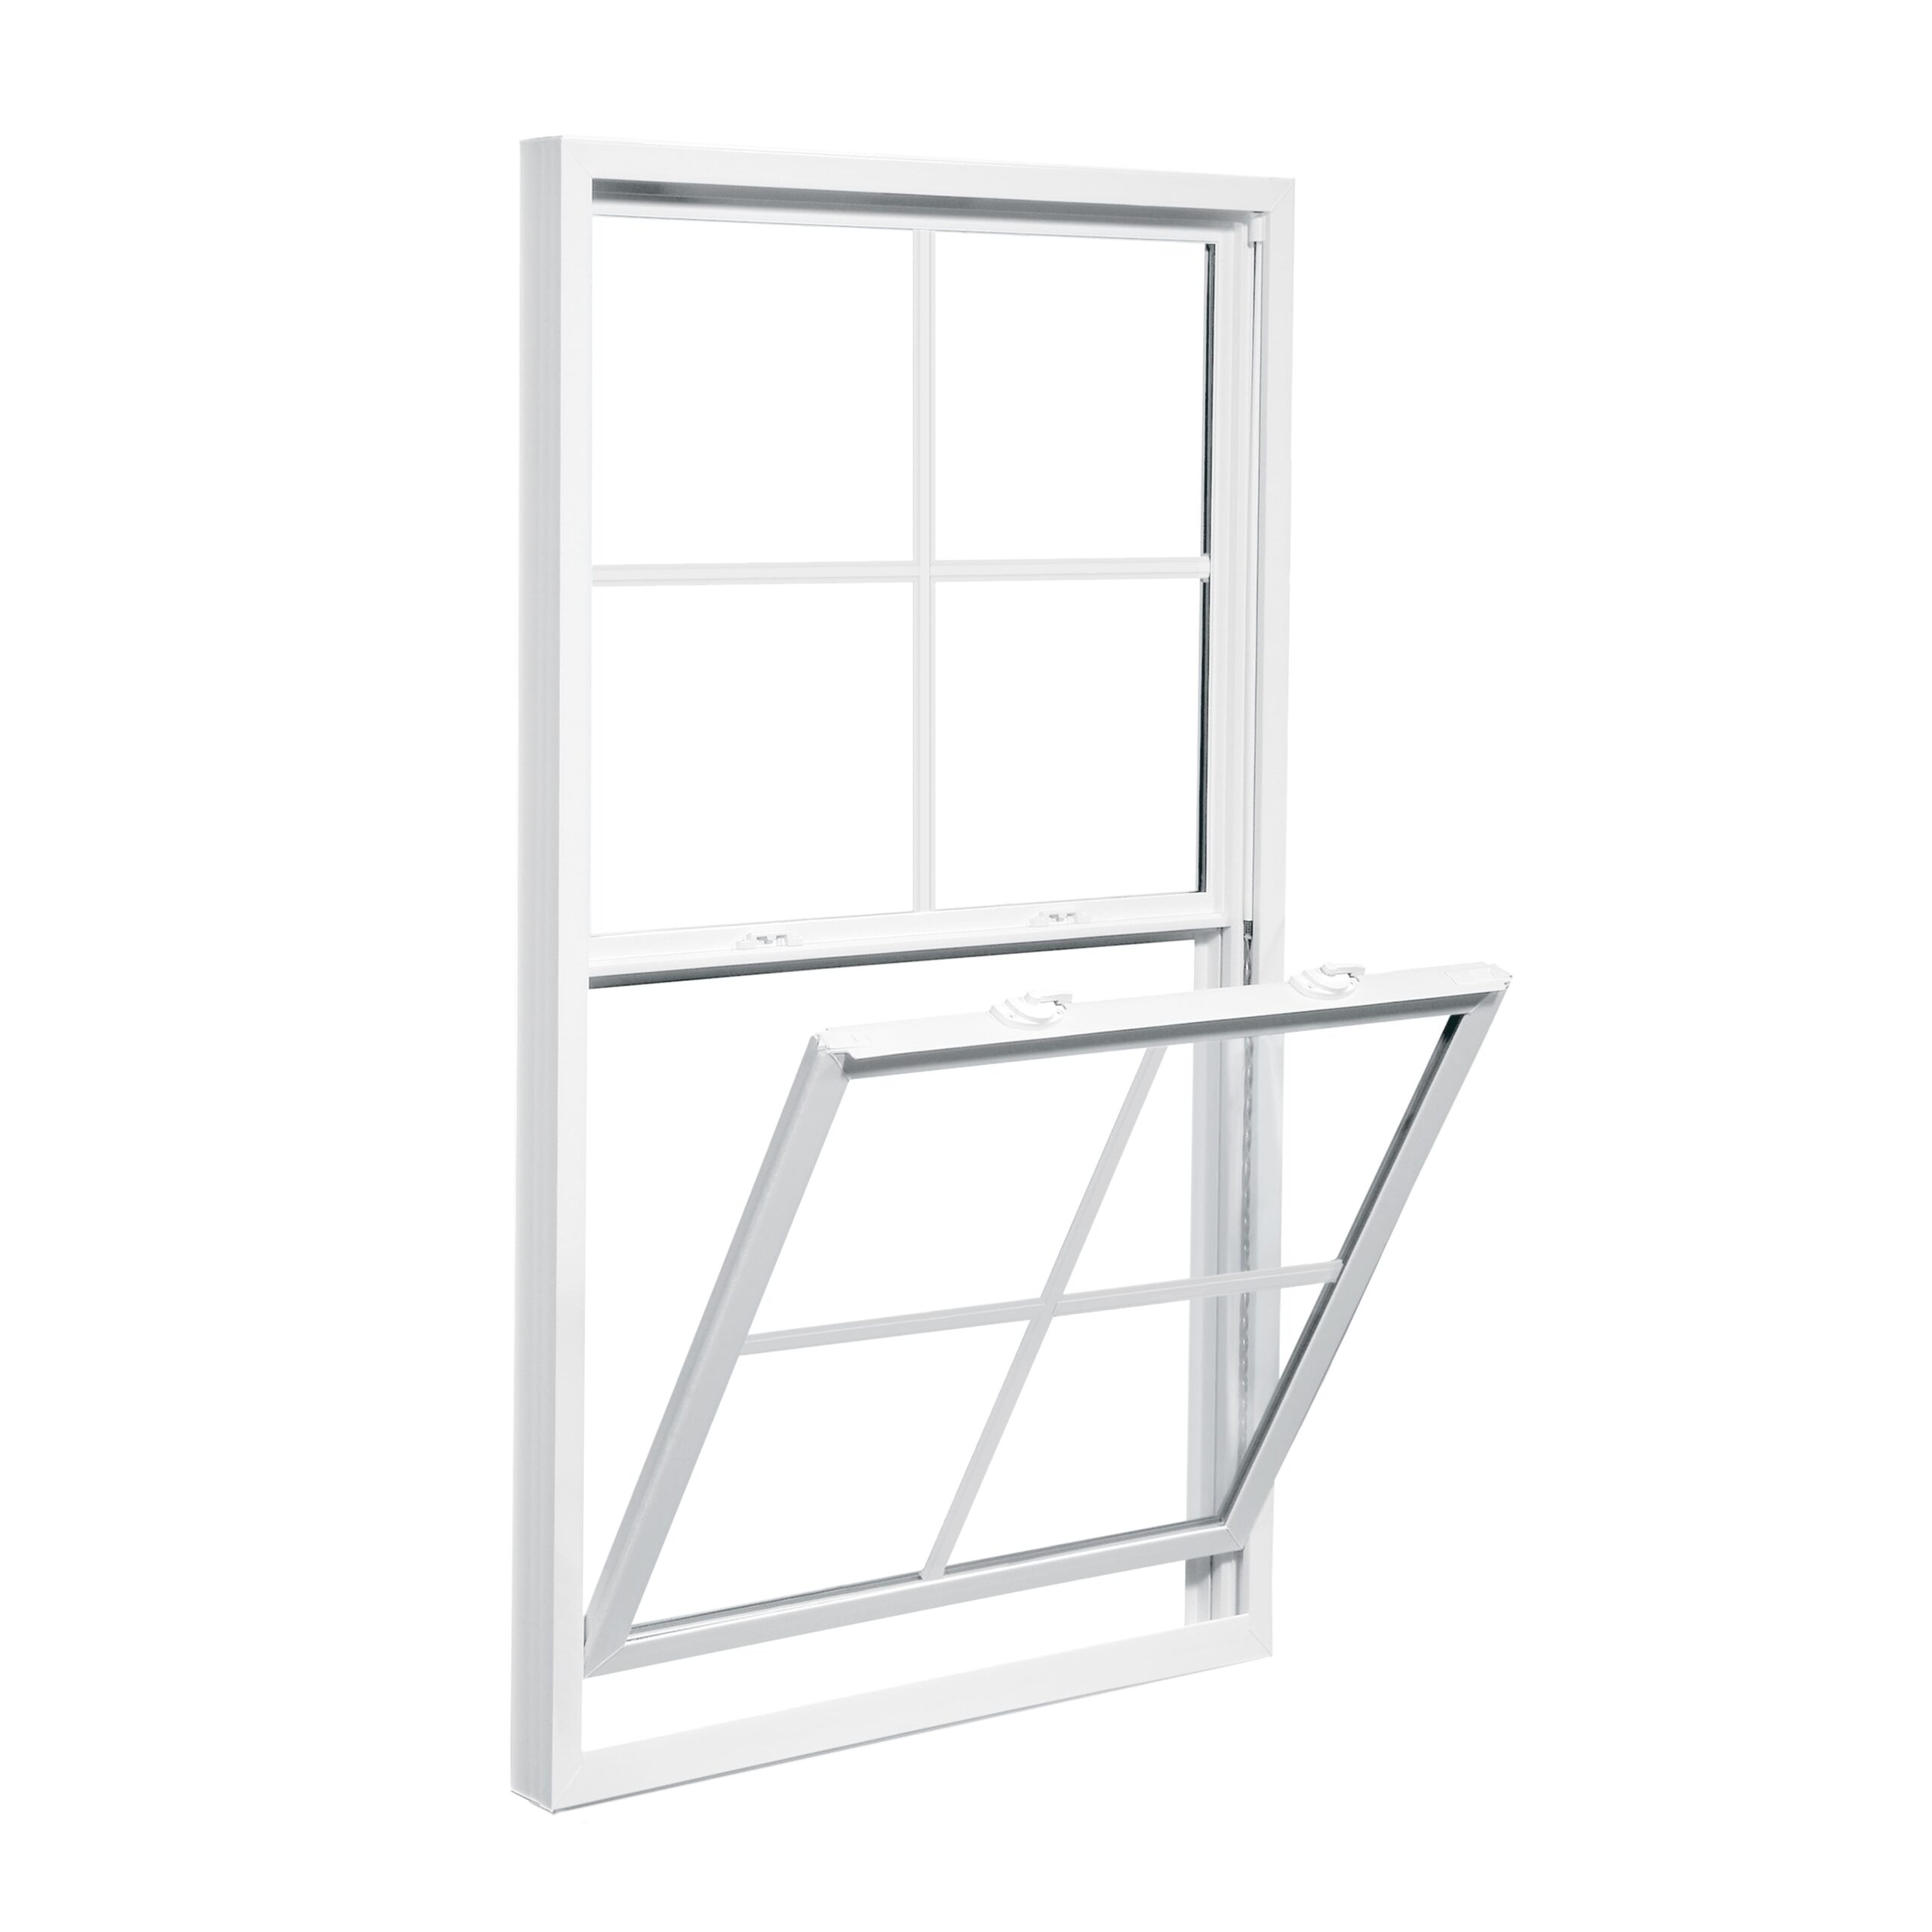 white-window-pane